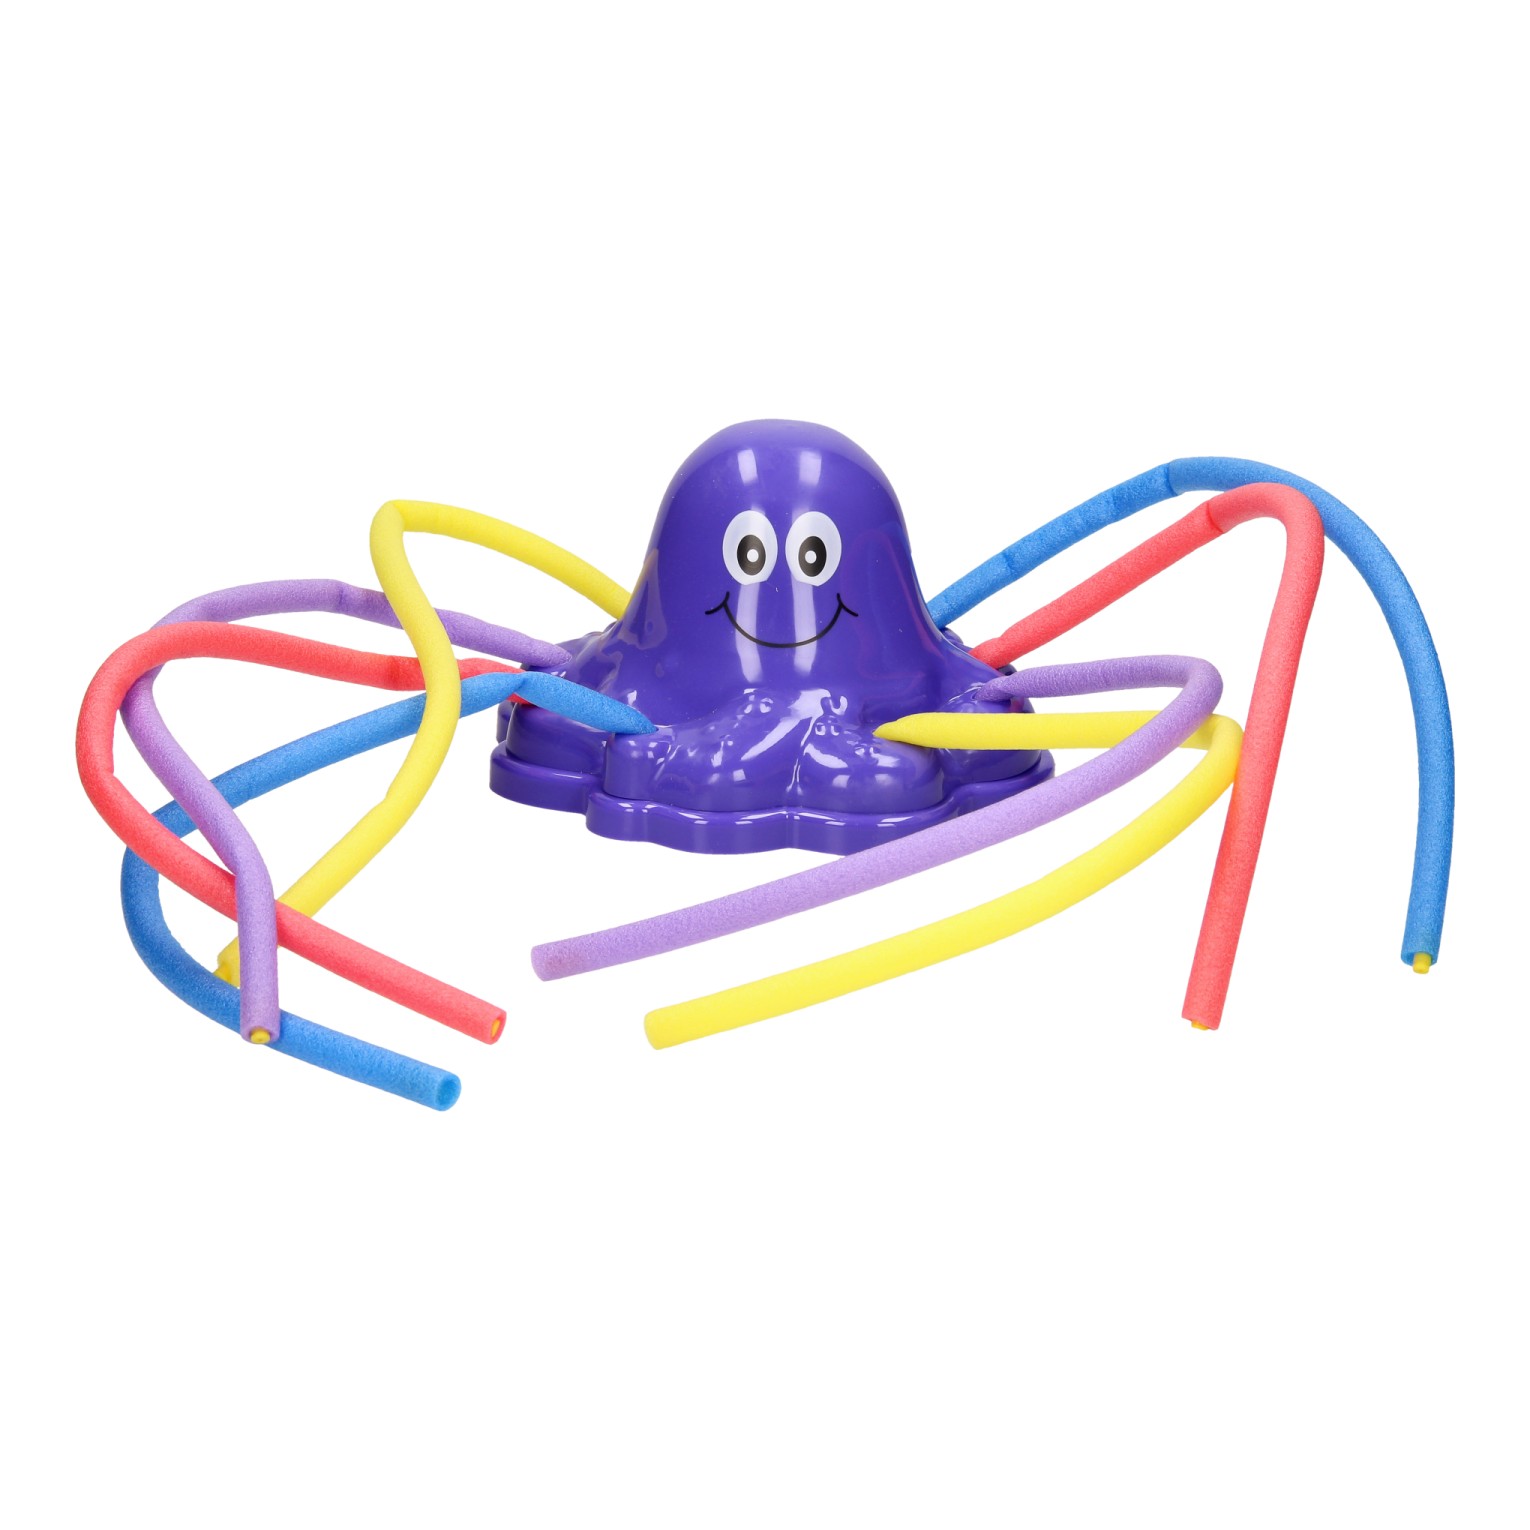 Niet meer geldig Huiswerk Umeki Watersproeier Octopus | Thimble Toys